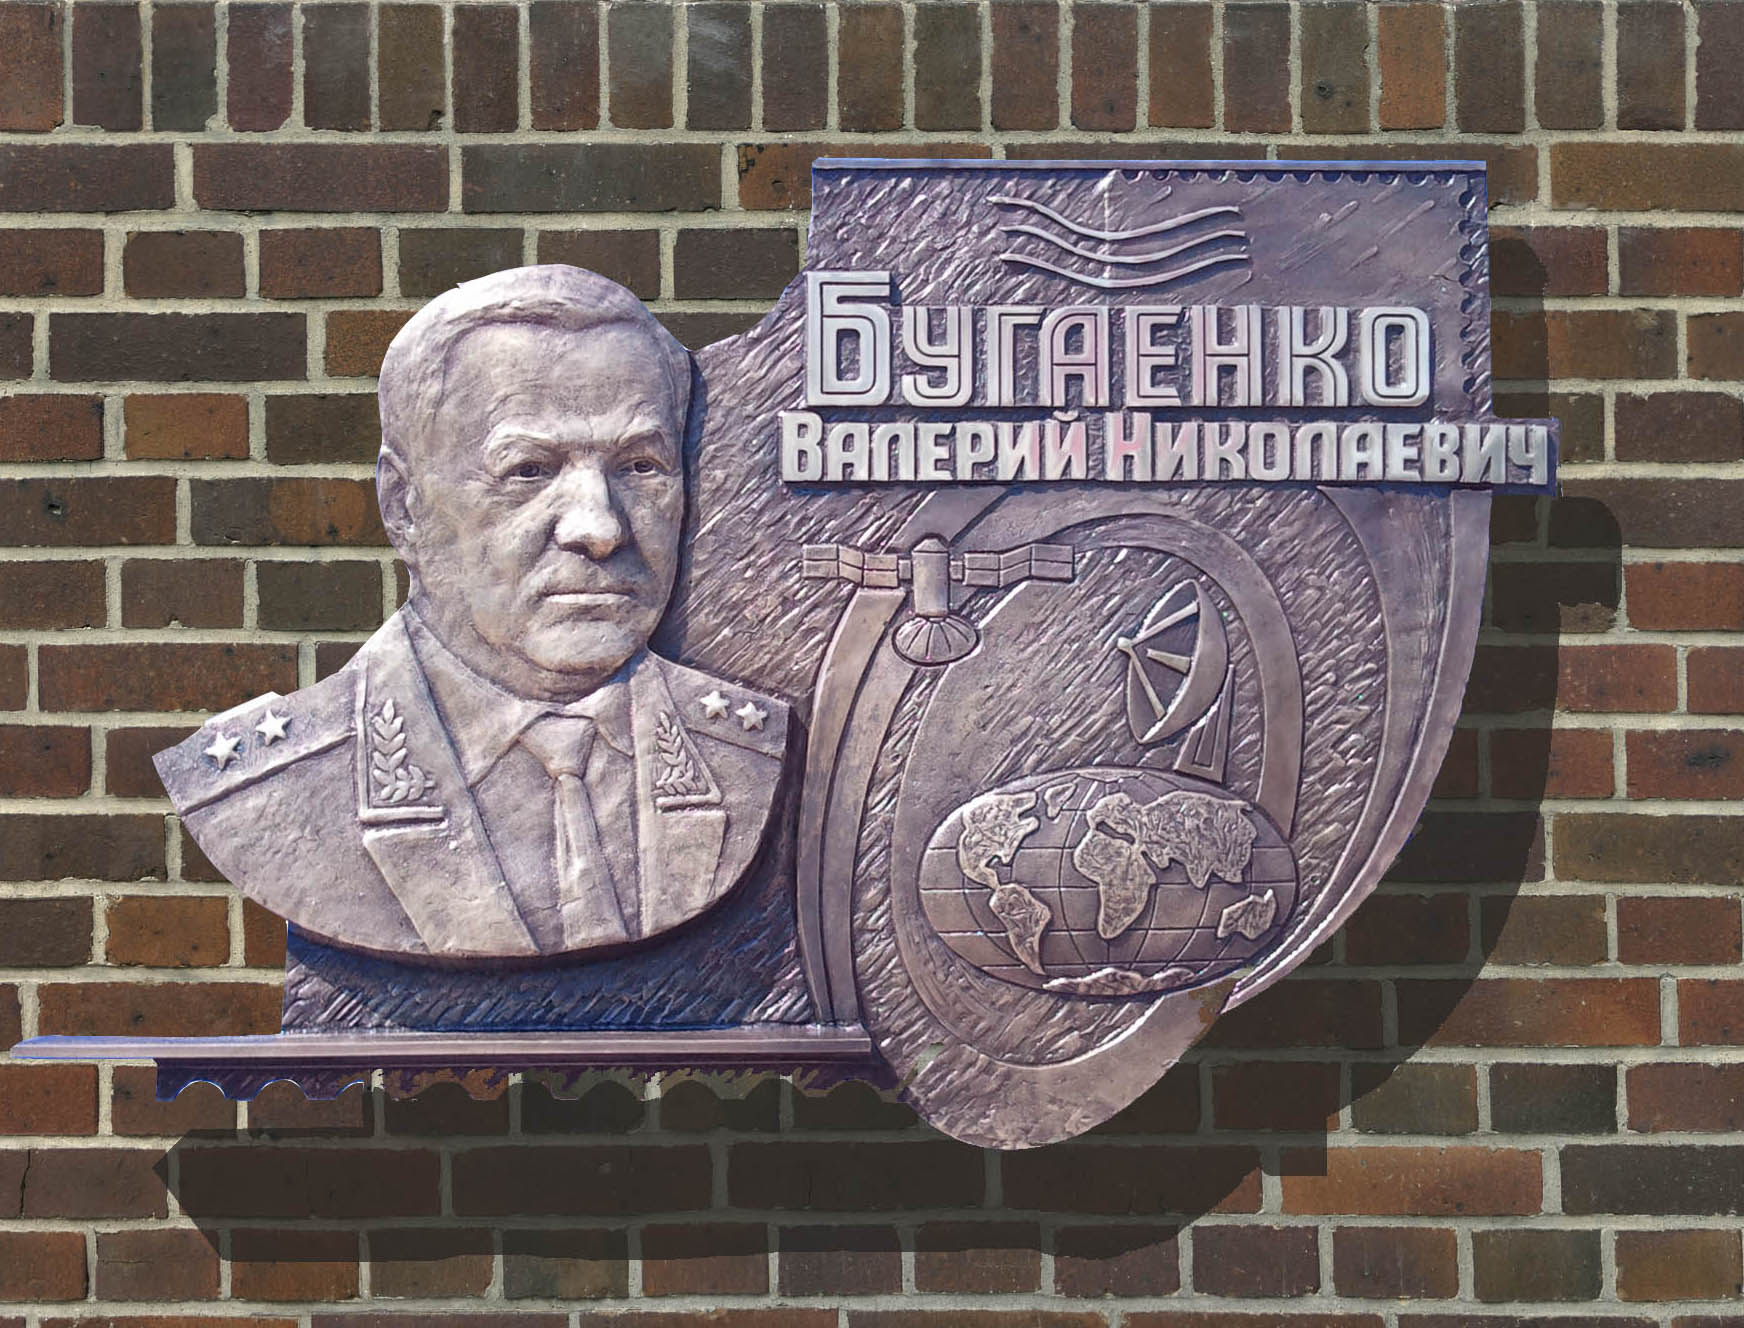 Памятная доска с барельефом Бугаенко Валерию Николаевичу из бронзы